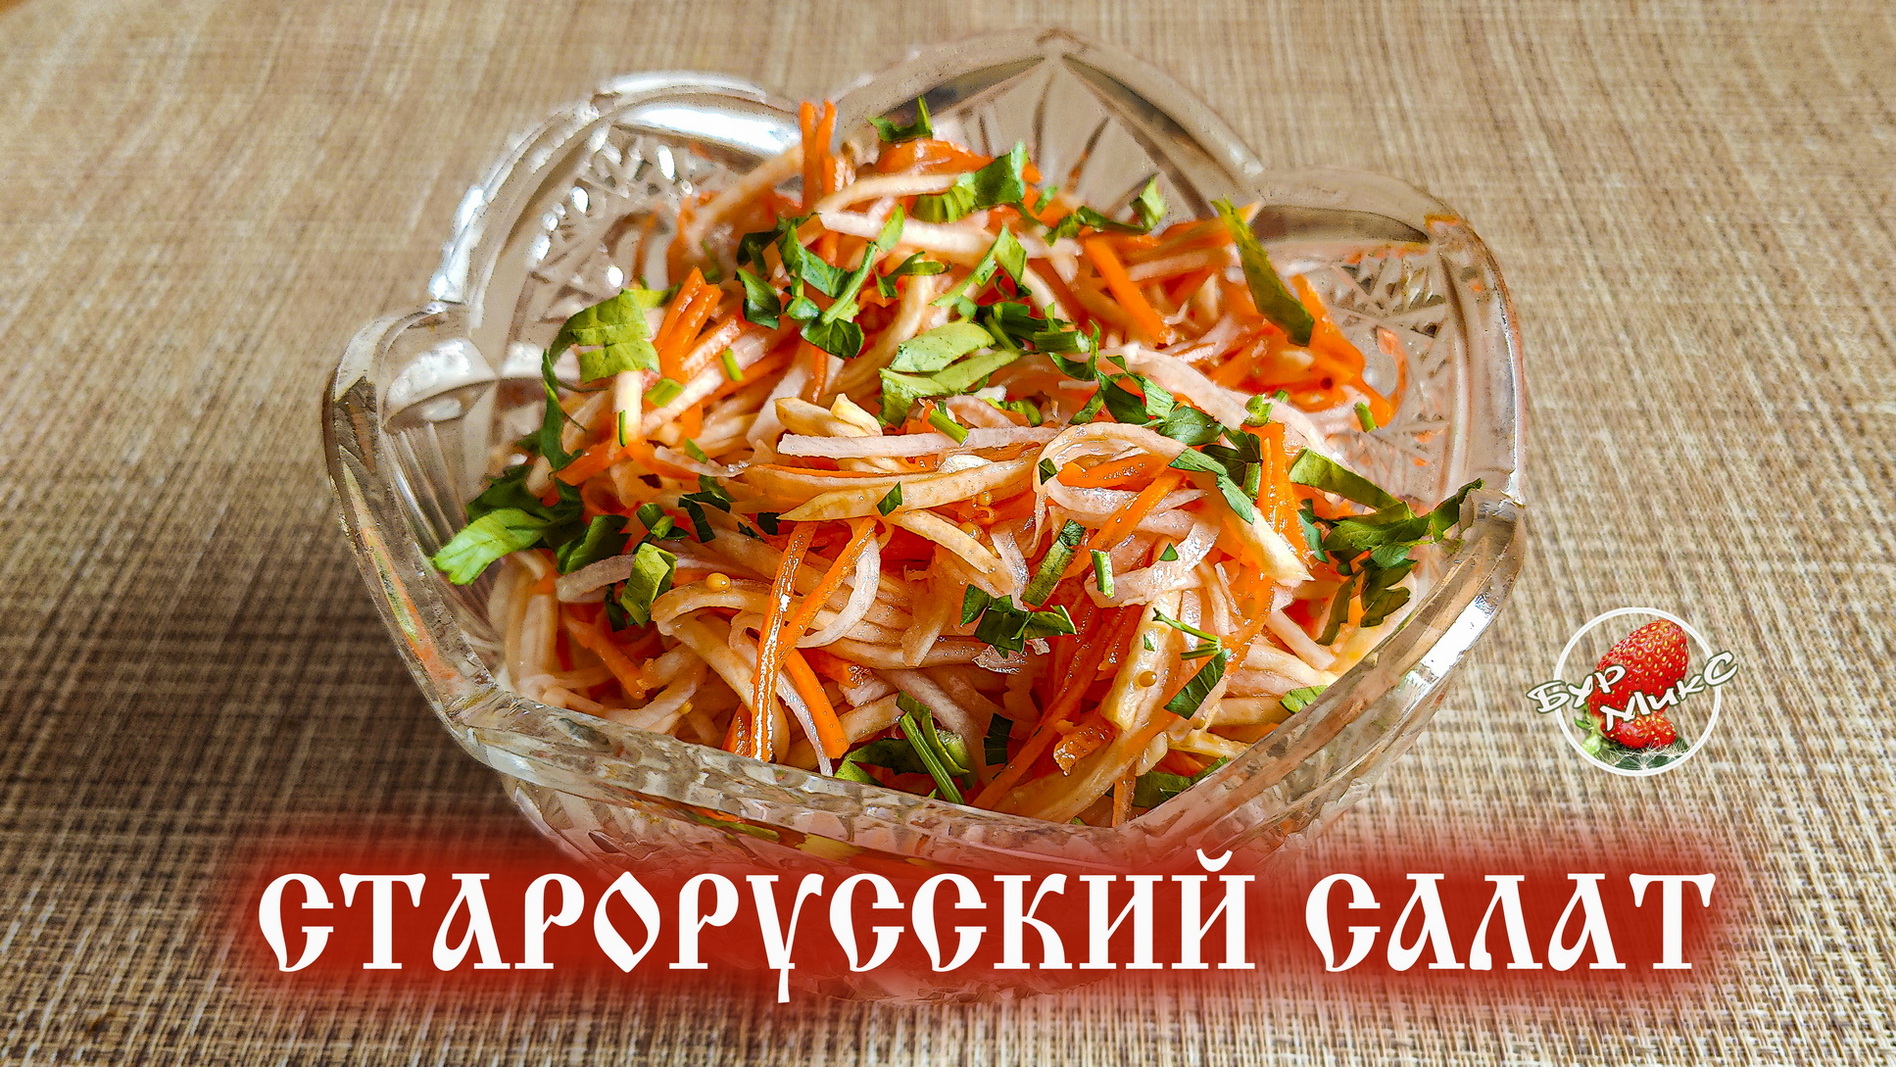 Старорусский салат из репы с морковью и редькой